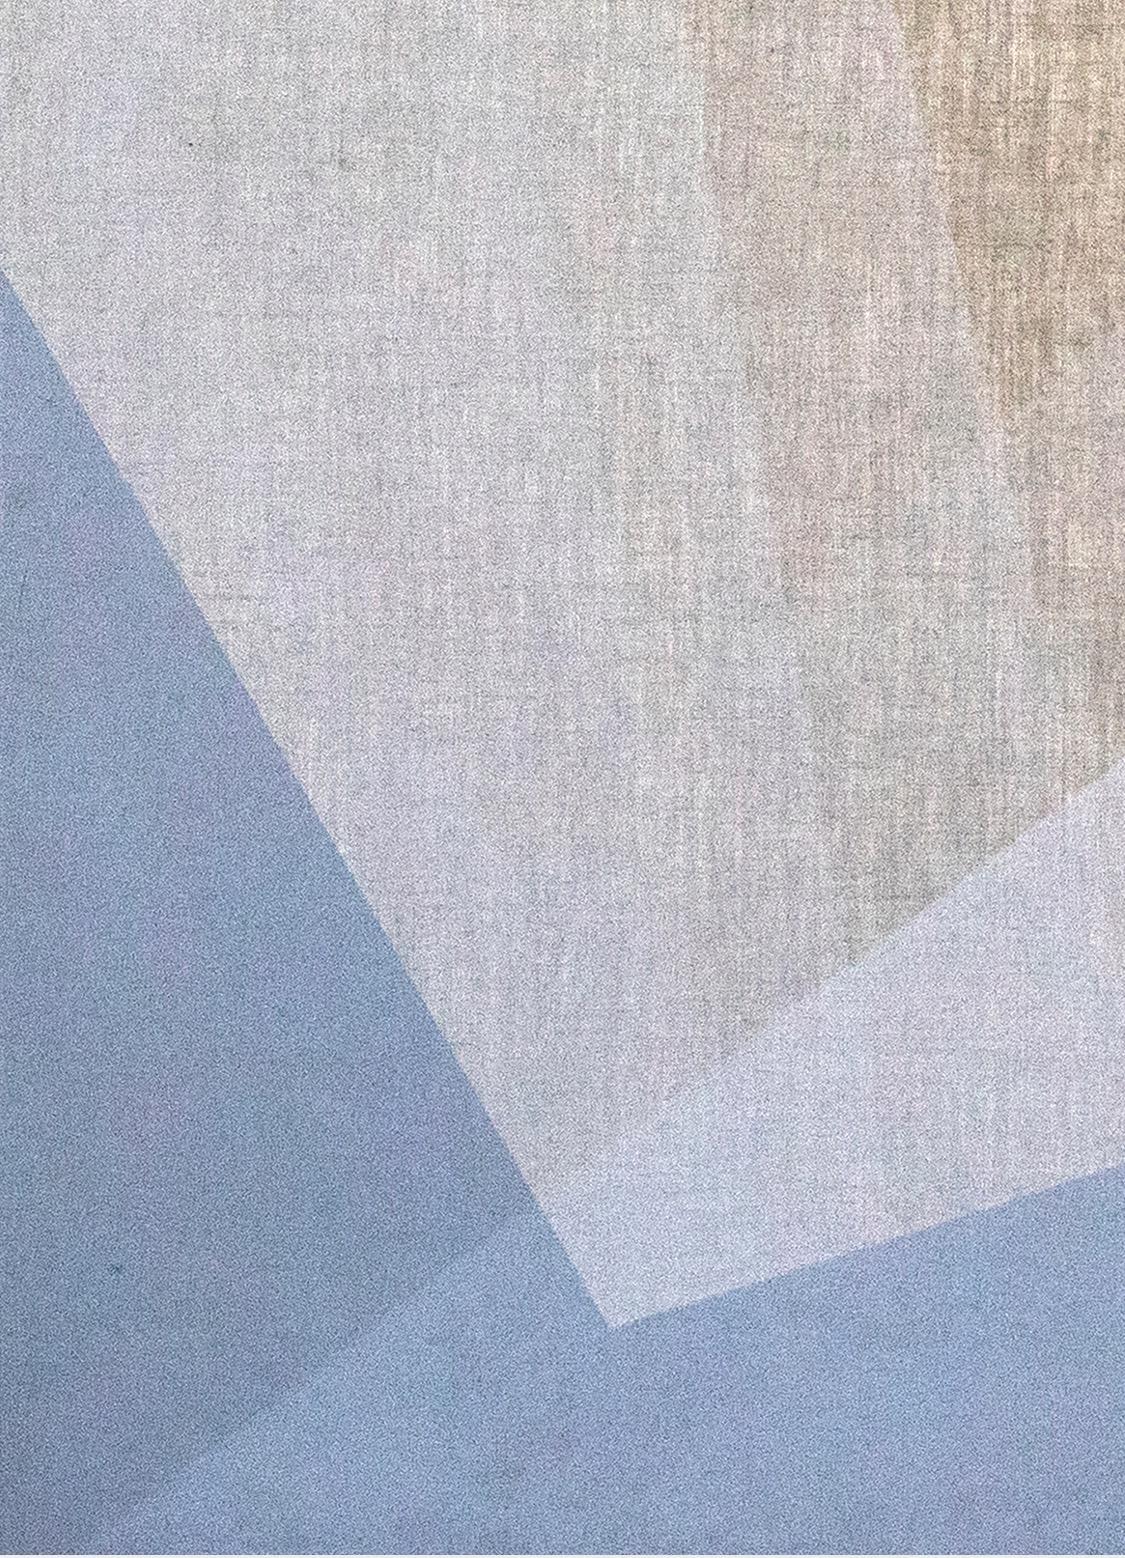 Zeitgenössische Kunst, Abstrakte Malerei, Immanence IV, 21. Jahrhundert (Grau), Abstract Painting, von Edgar Solorzano